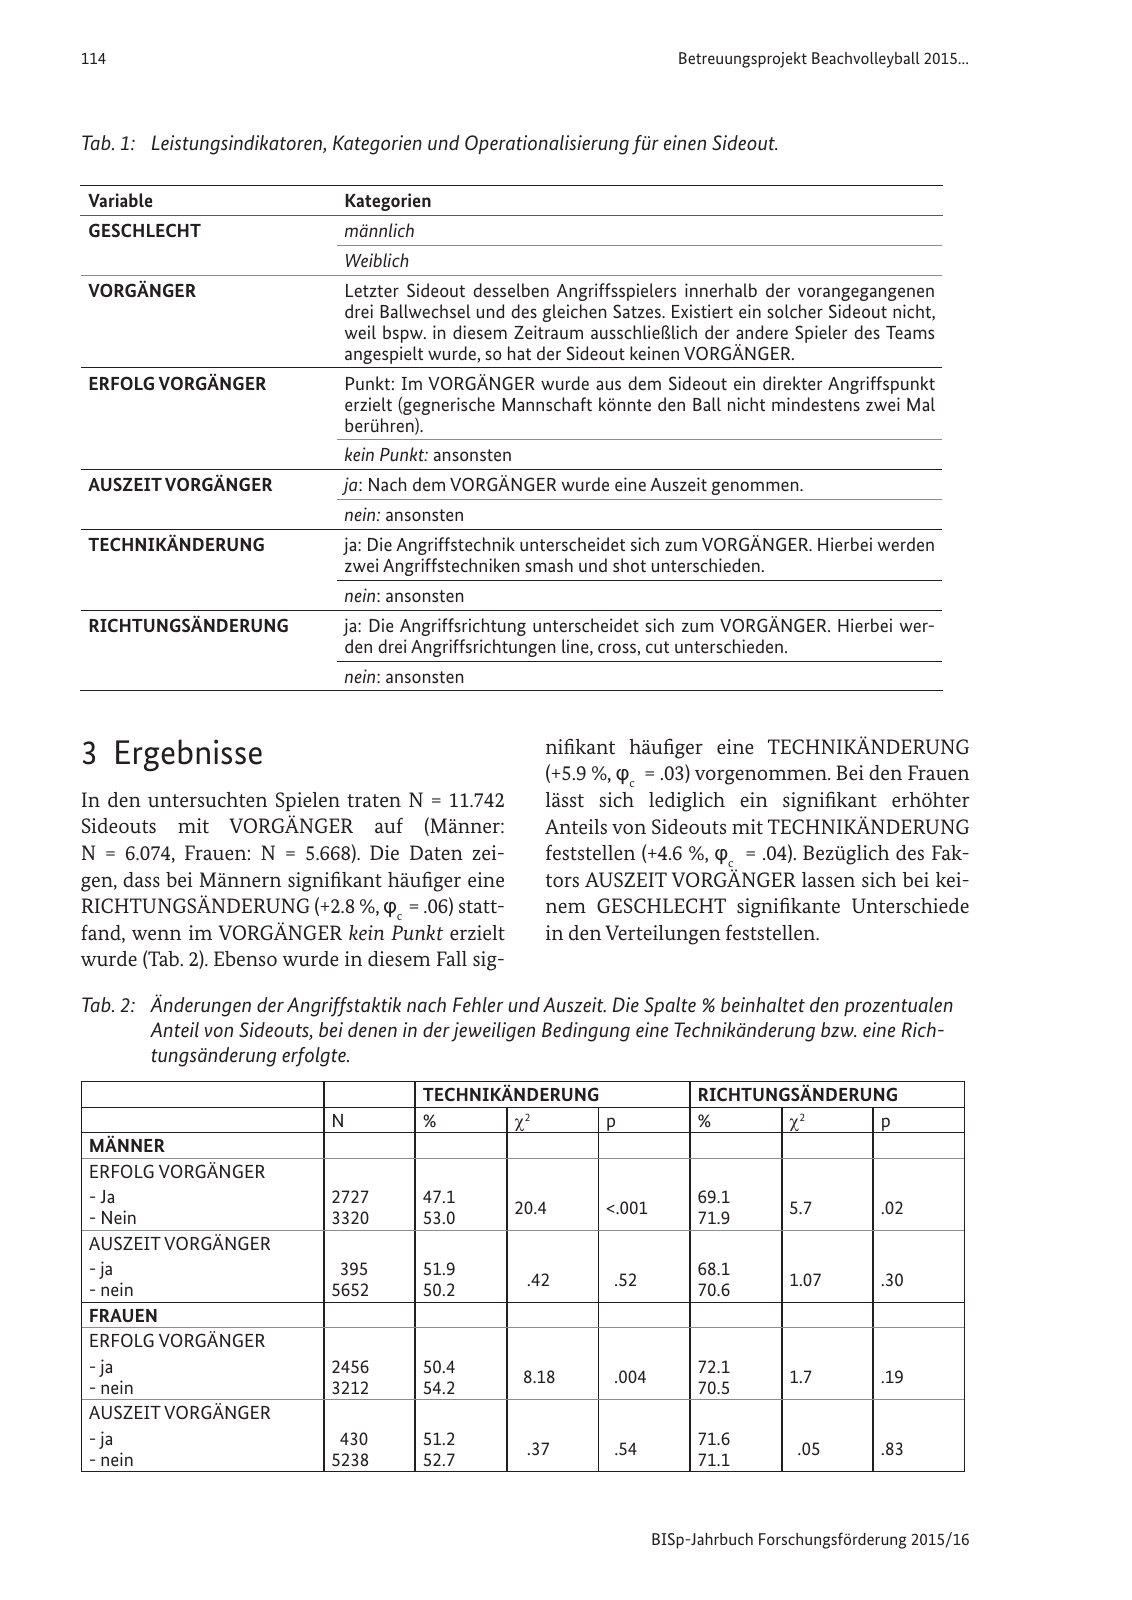 Vorschau BISp-Jahrbuch Forschungsförderung 2015/16 Seite 116